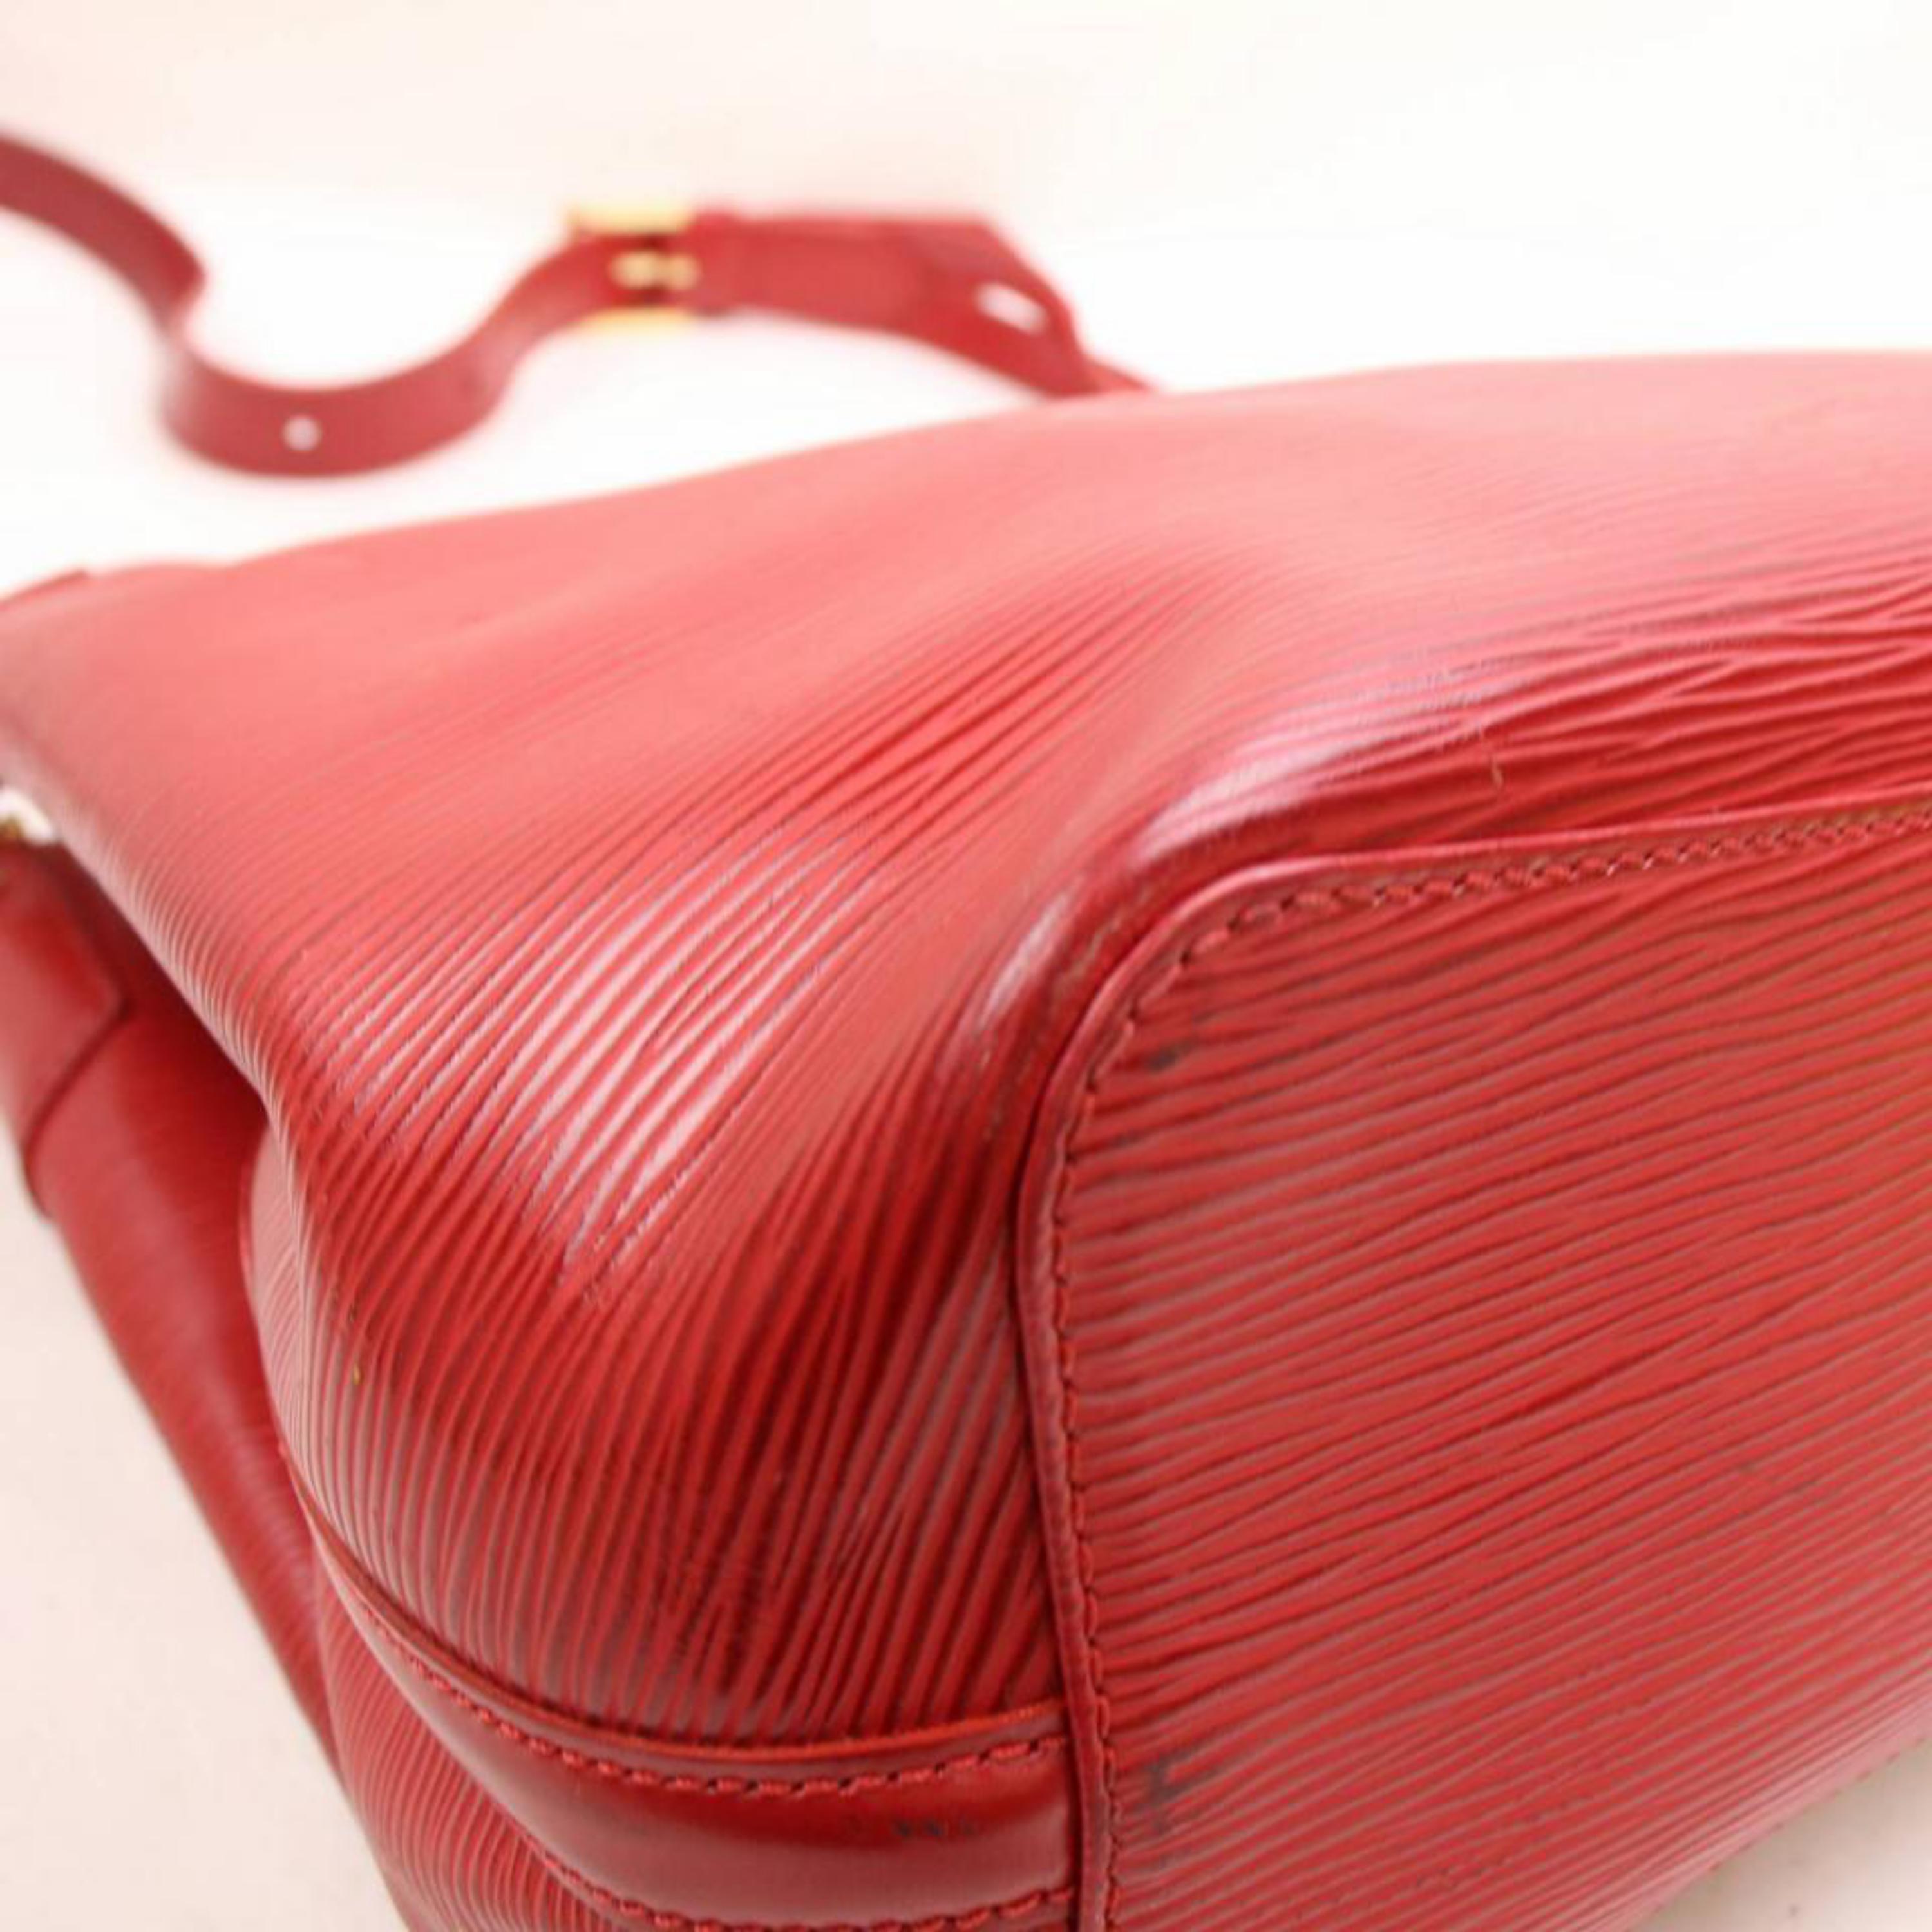 Louis Vuitton Mandara Epi Mm Hobo 868362 Red Leather Shoulder Bag For Sale 5